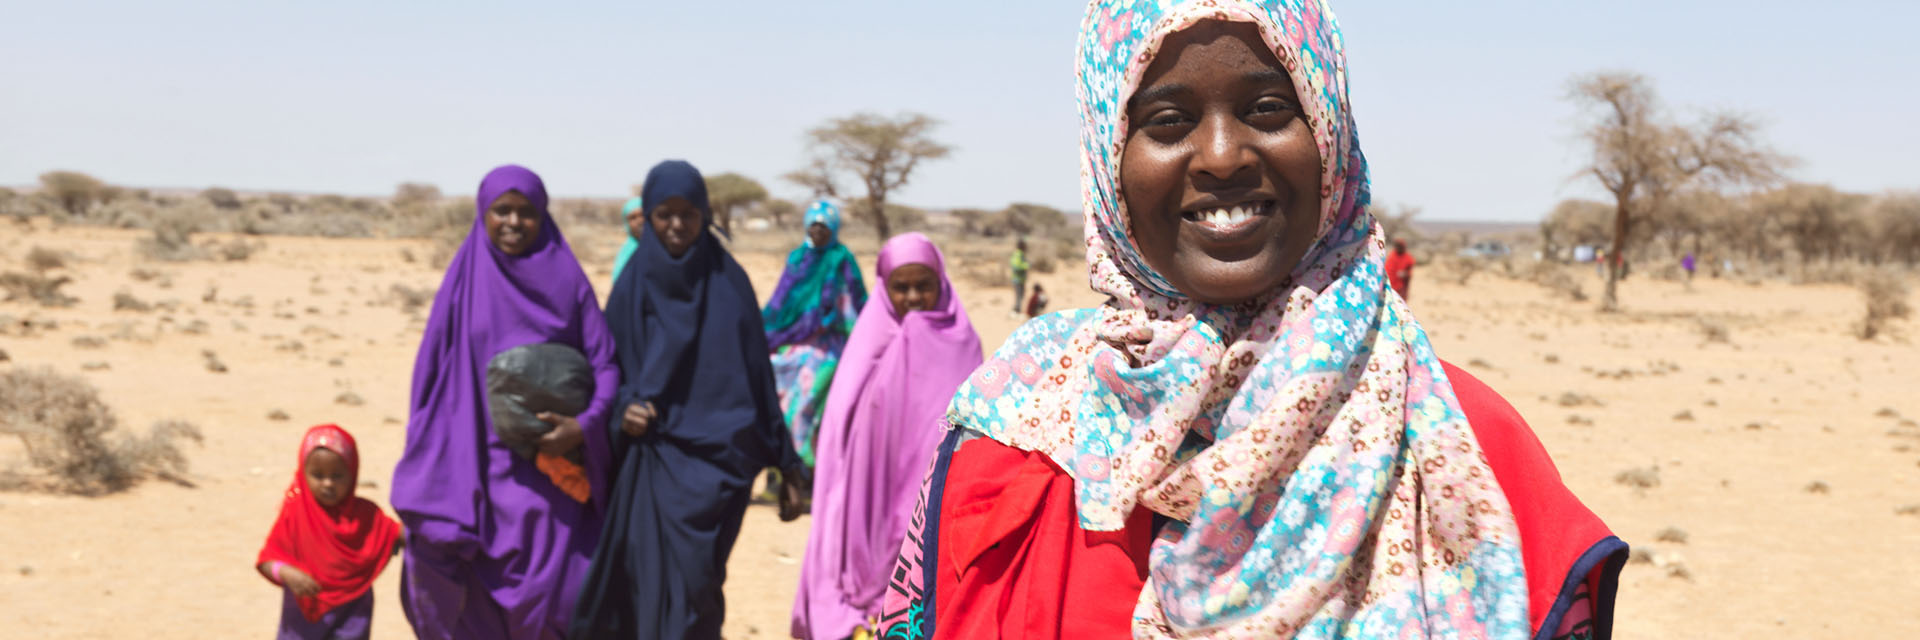 Foto: Rothalbmondfreiwillige in Somalia vor einigen Frauen mit Kind